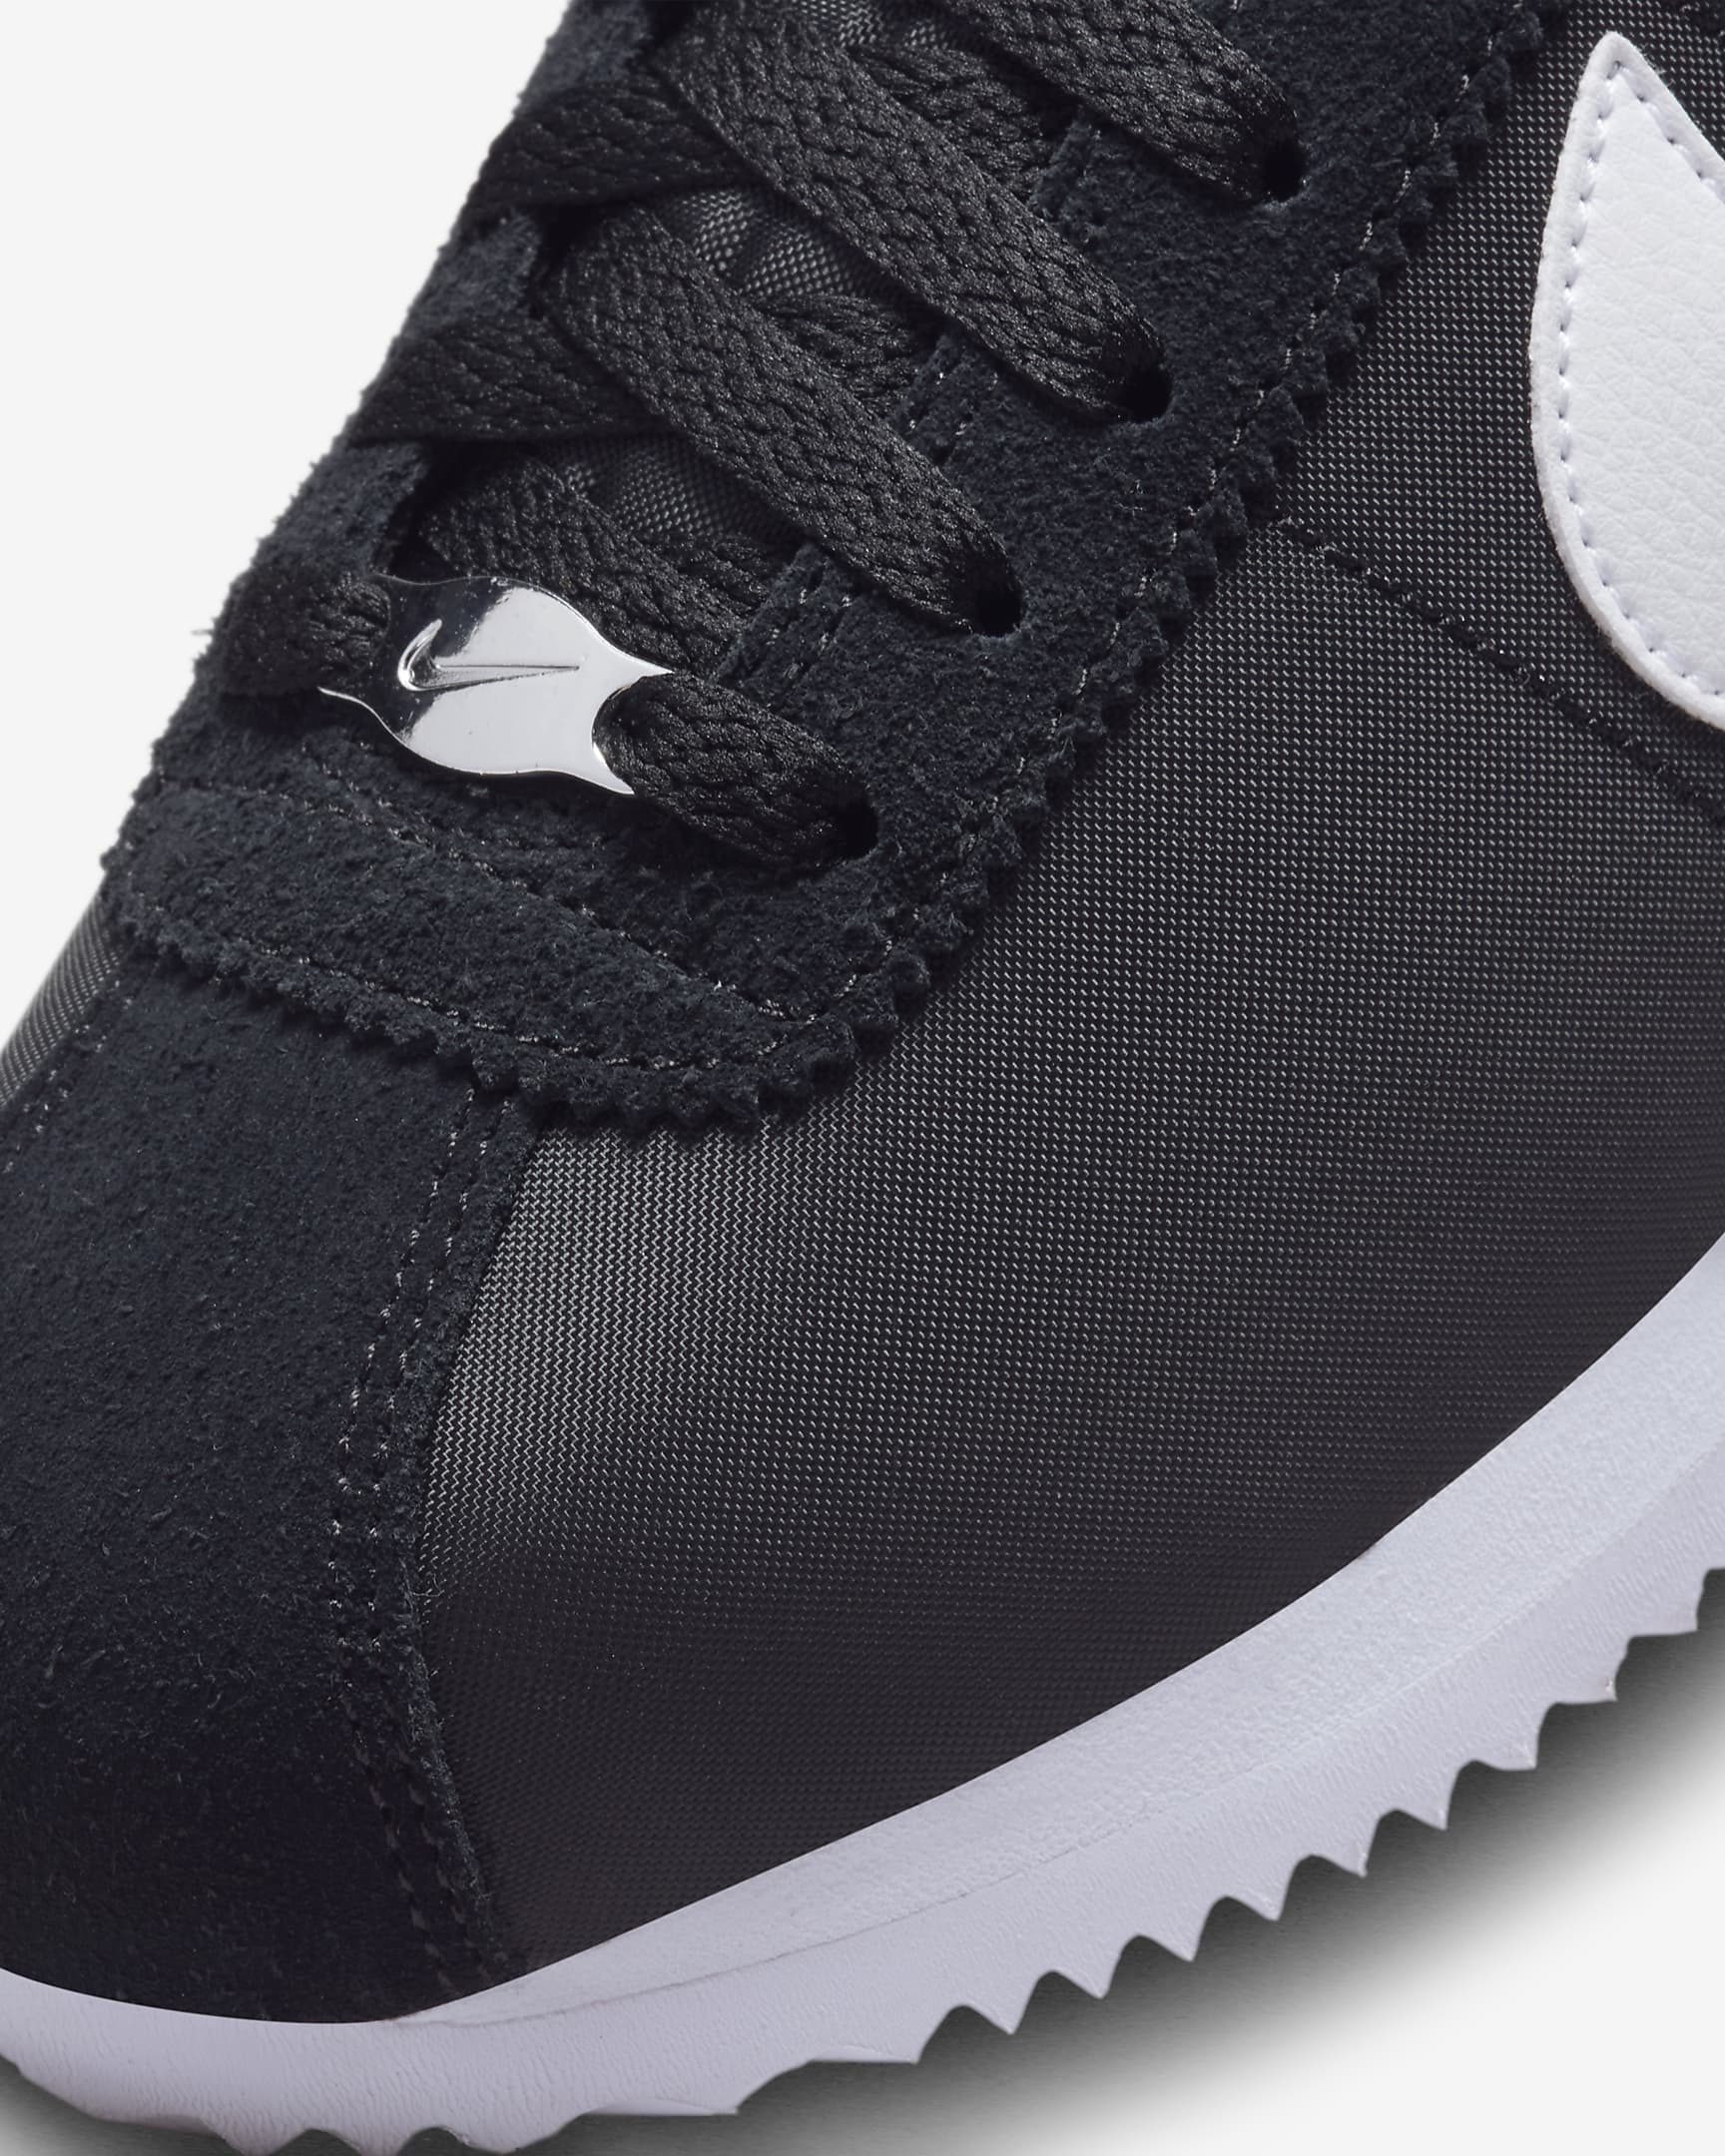 Chaussure Nike Cortez Textile pour femme - Noir/Blanc